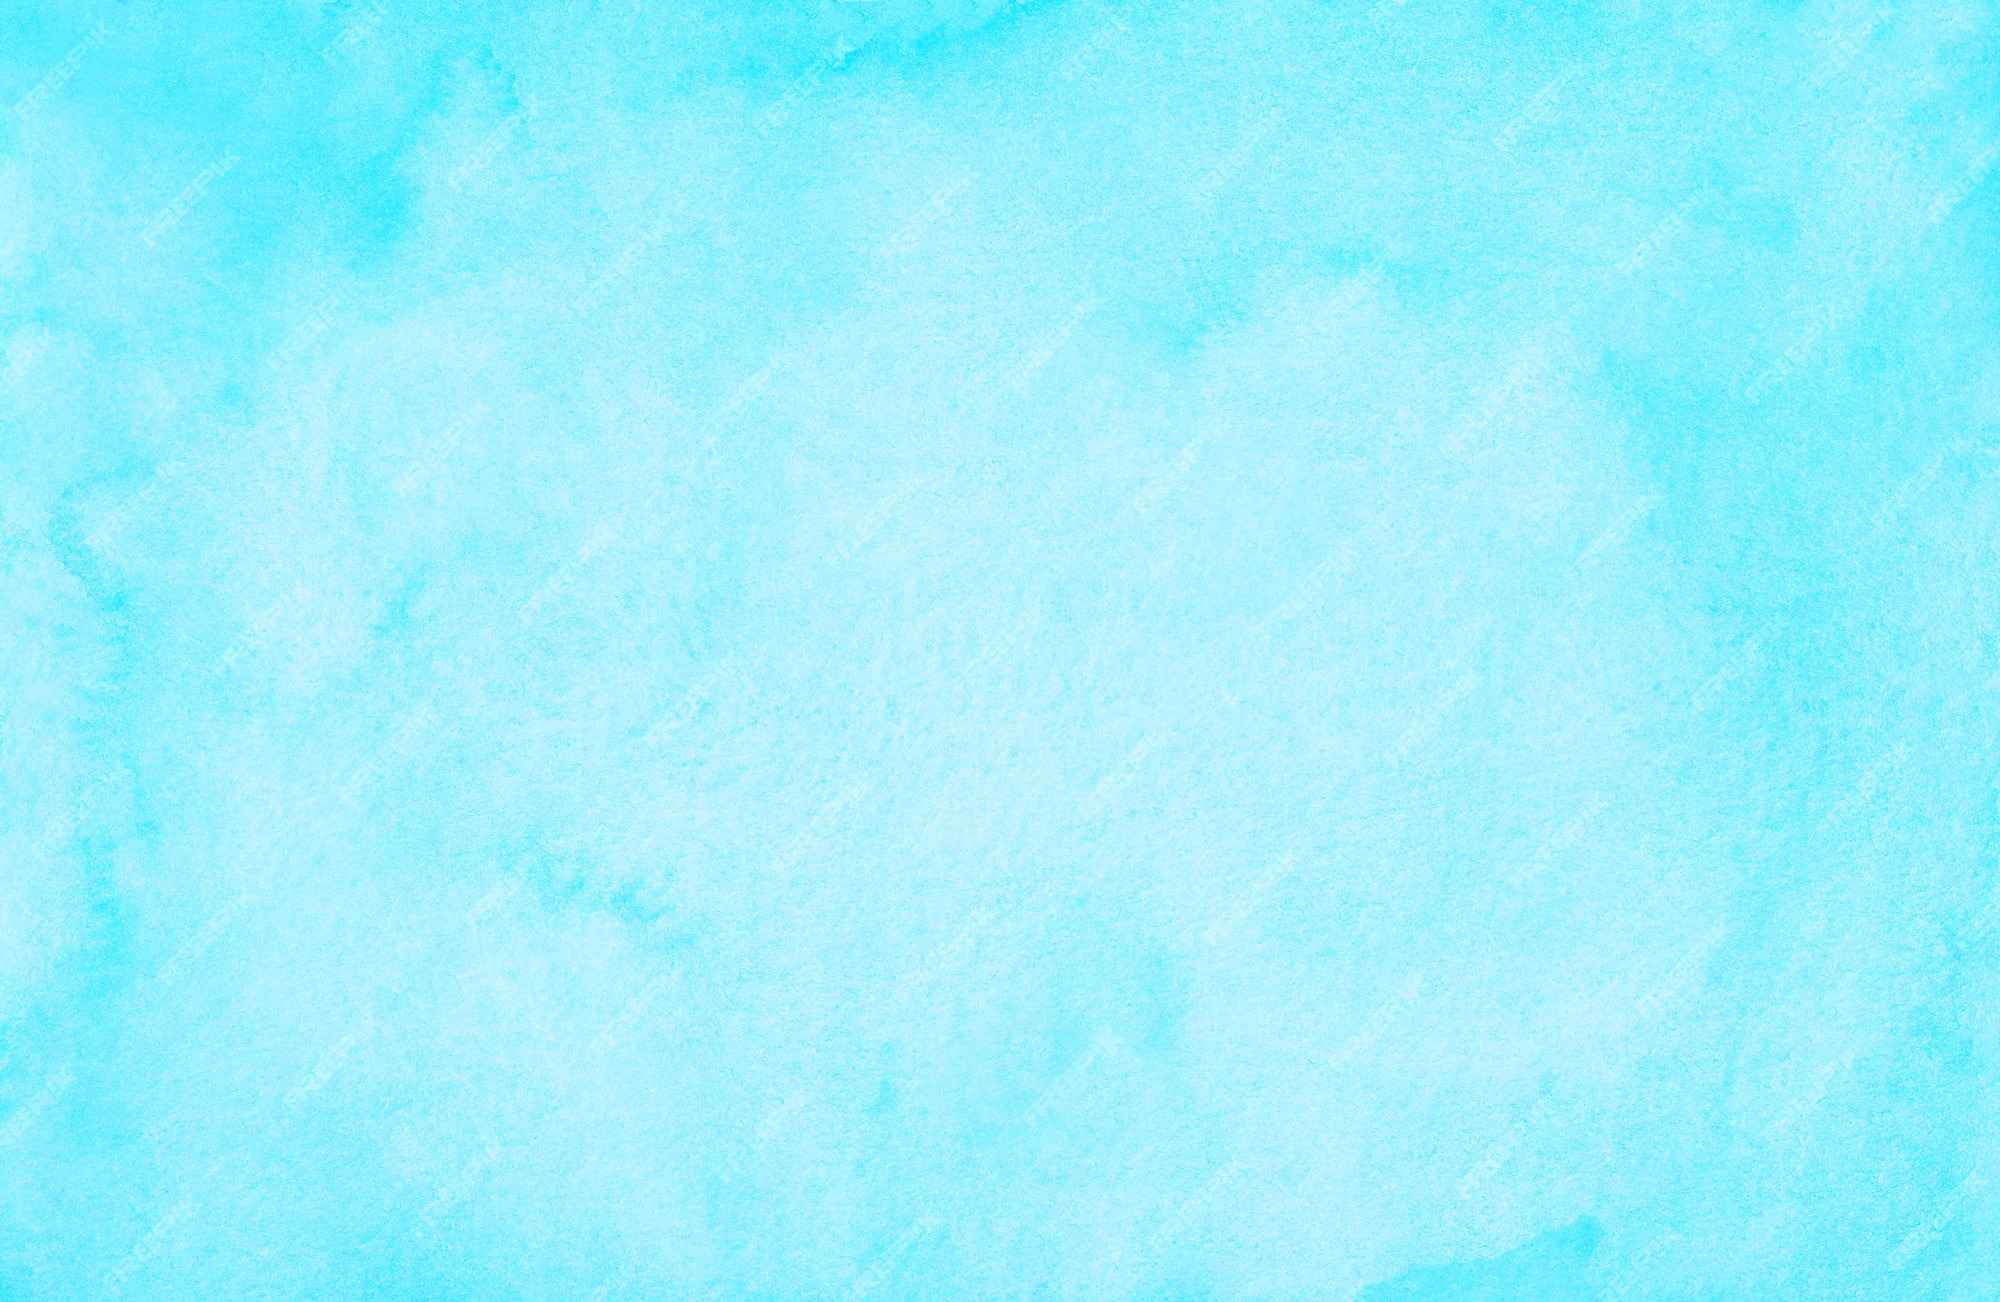 Với chất lượng màu sắc tươi sáng, bức tranh sơn màu pastel cyan blue sẽ đem đến cho bạn cảm giác trong lành và tình cảm. Hãy đắm chìm trong cảm giác ấm áp và thư thái khi ngắm nhìn tác phẩm này.